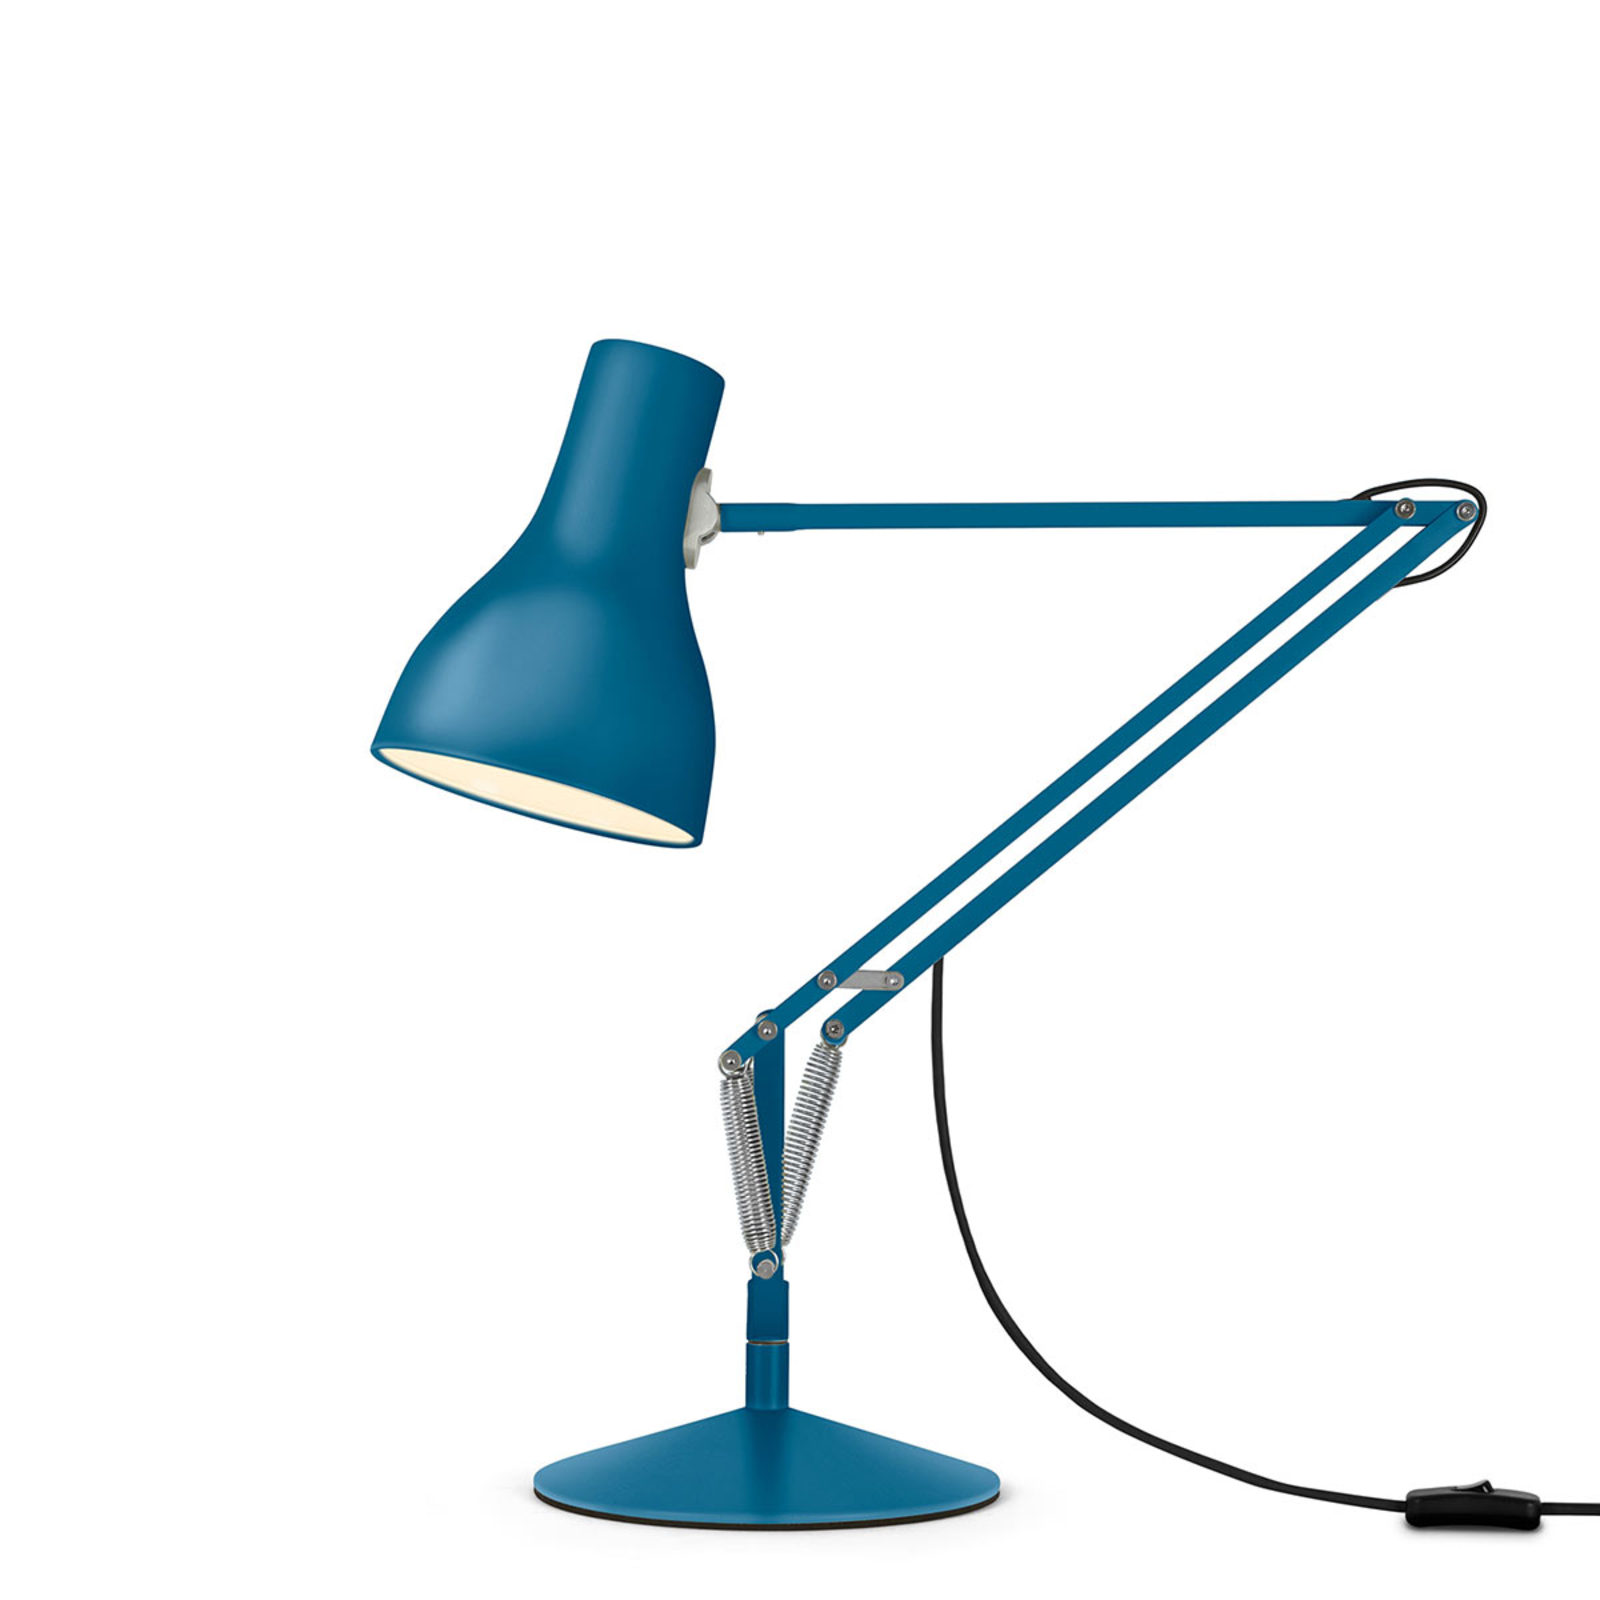 Stolová lampa Anglepoise Typ 75 Margaret Howell modrá